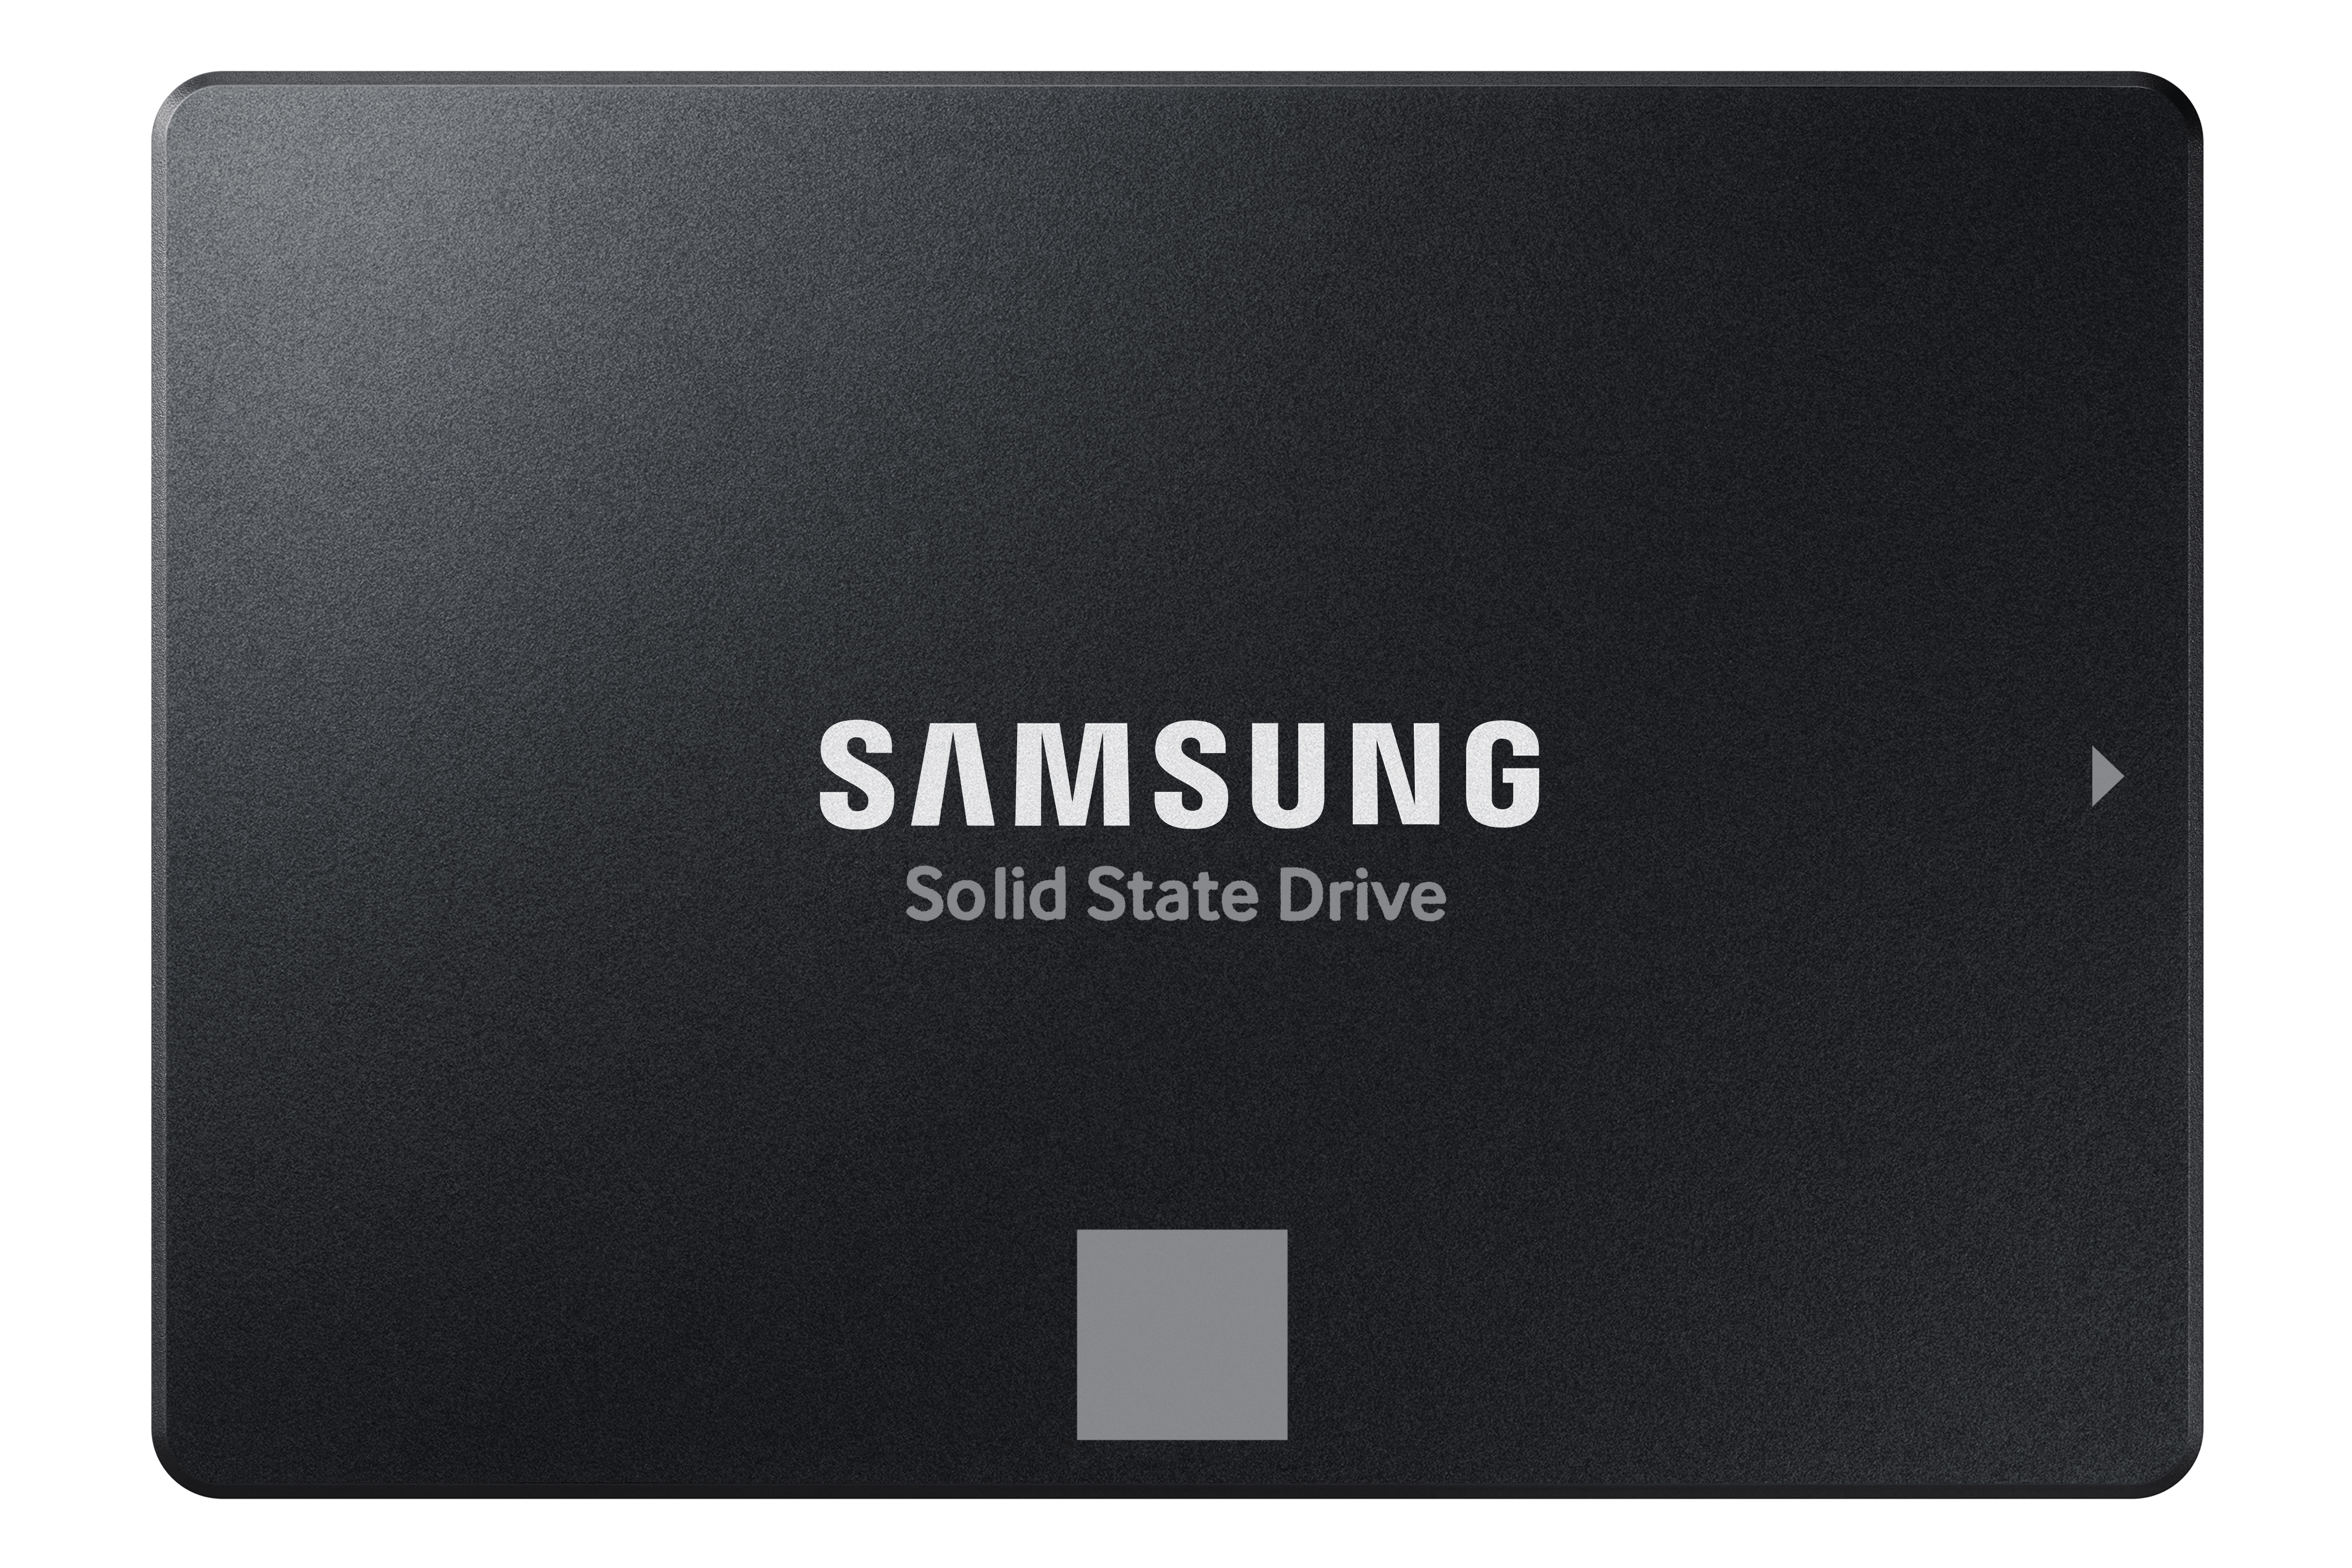 kurve Pest Springboard 870 EVO SATA 2.5" SSD 500GB Memory & Storage - MZ-77E500B/AM | Samsung US